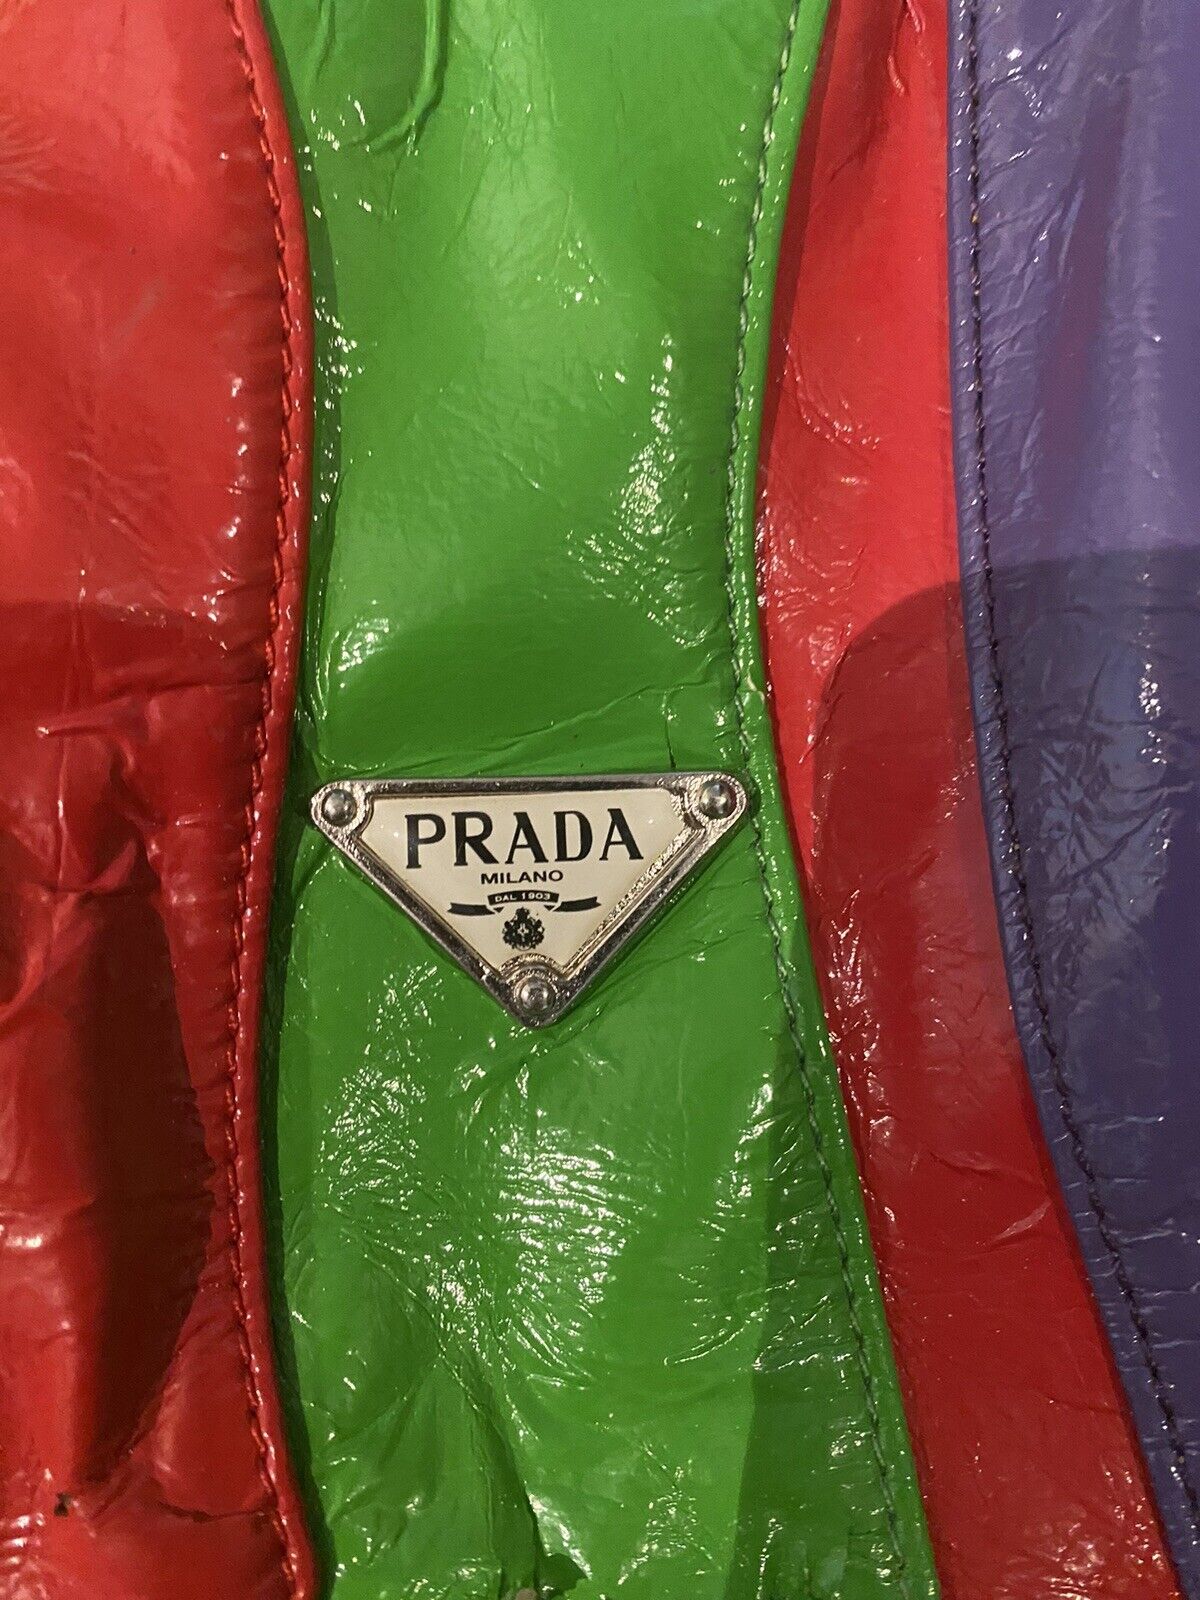 Prada Multicolor Handbag - image 4